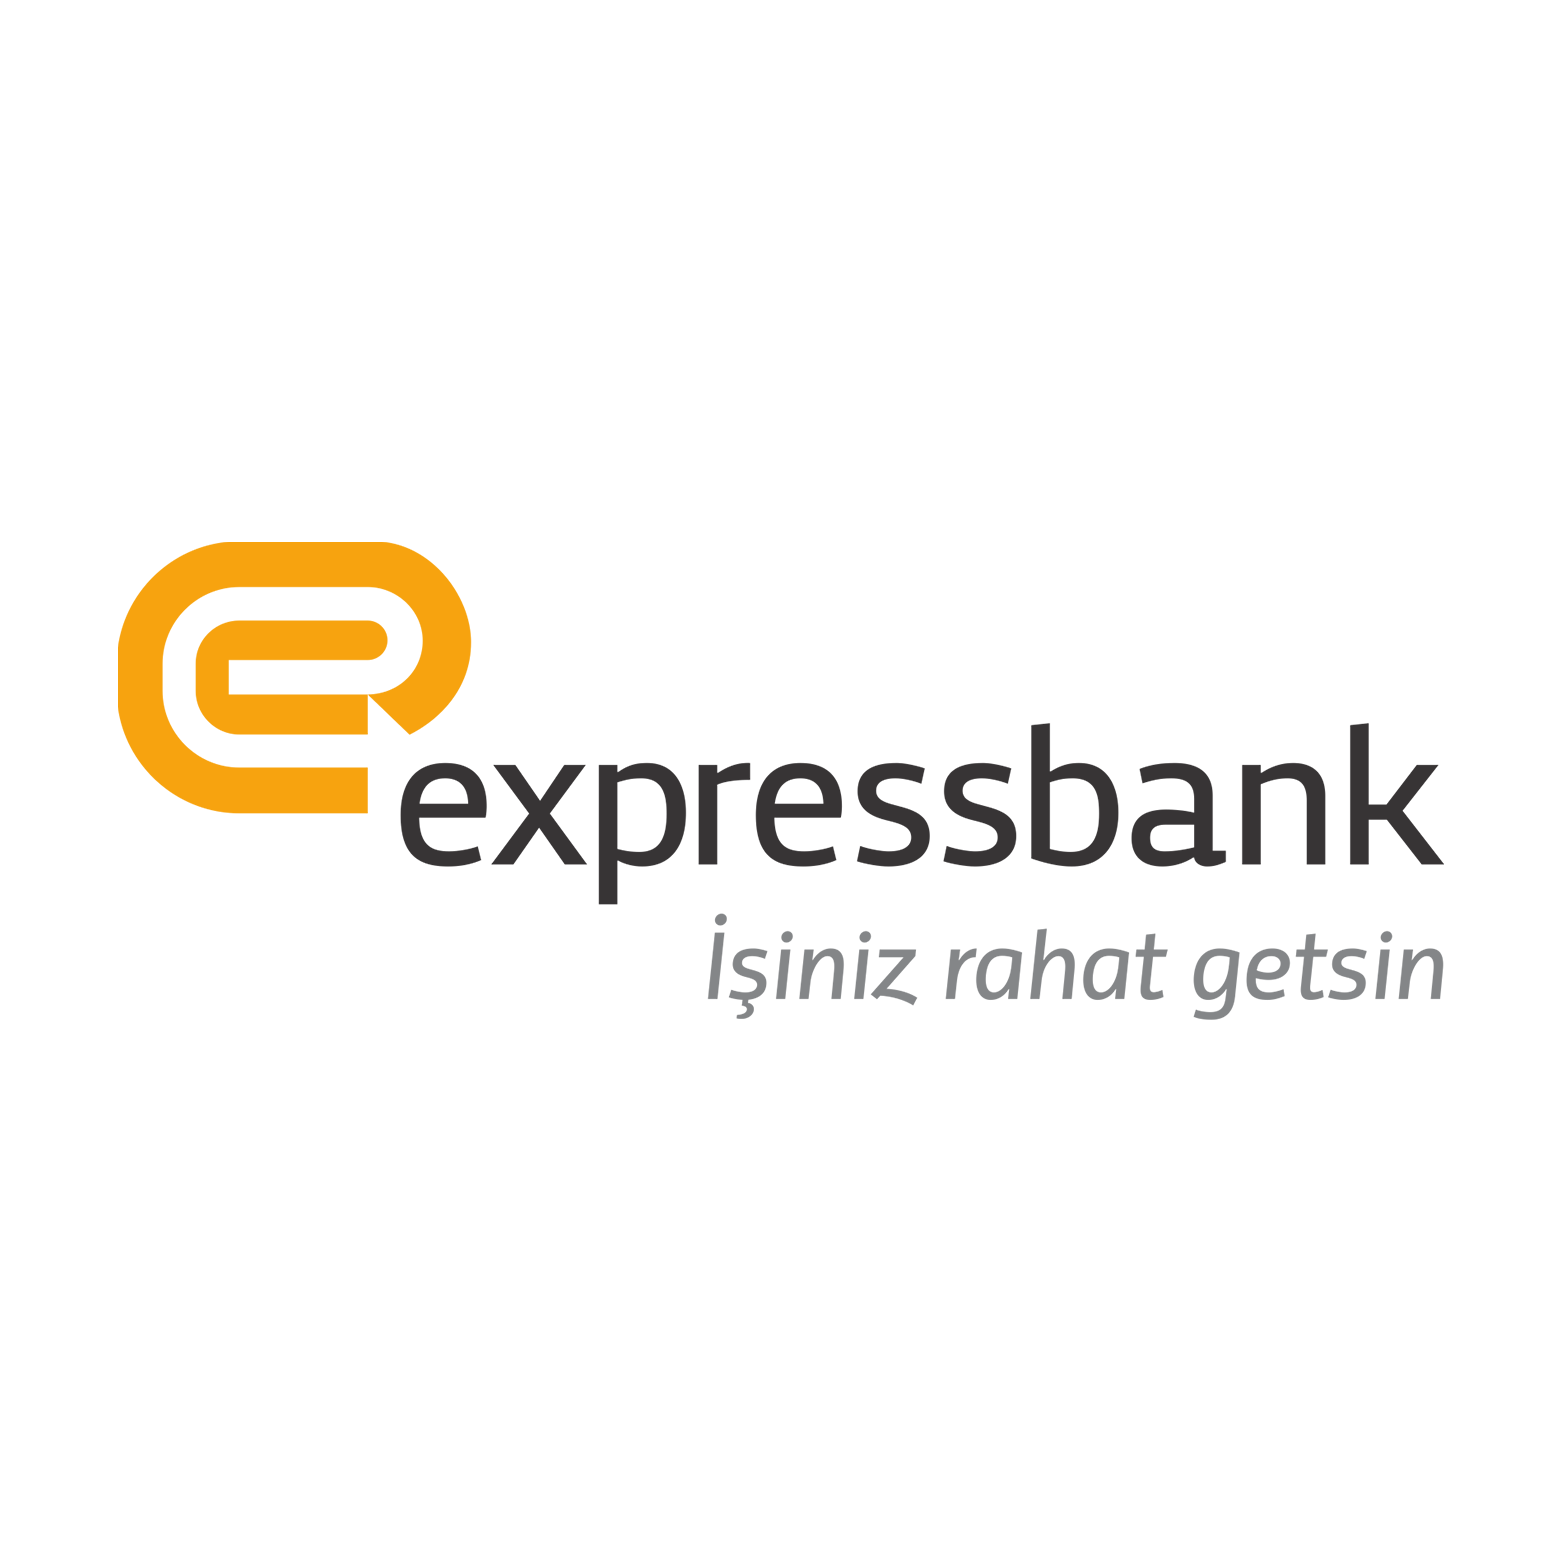 Expressbank-ın xalis mənfəəti son bir il ərzində 3 dəfədən çox artıb